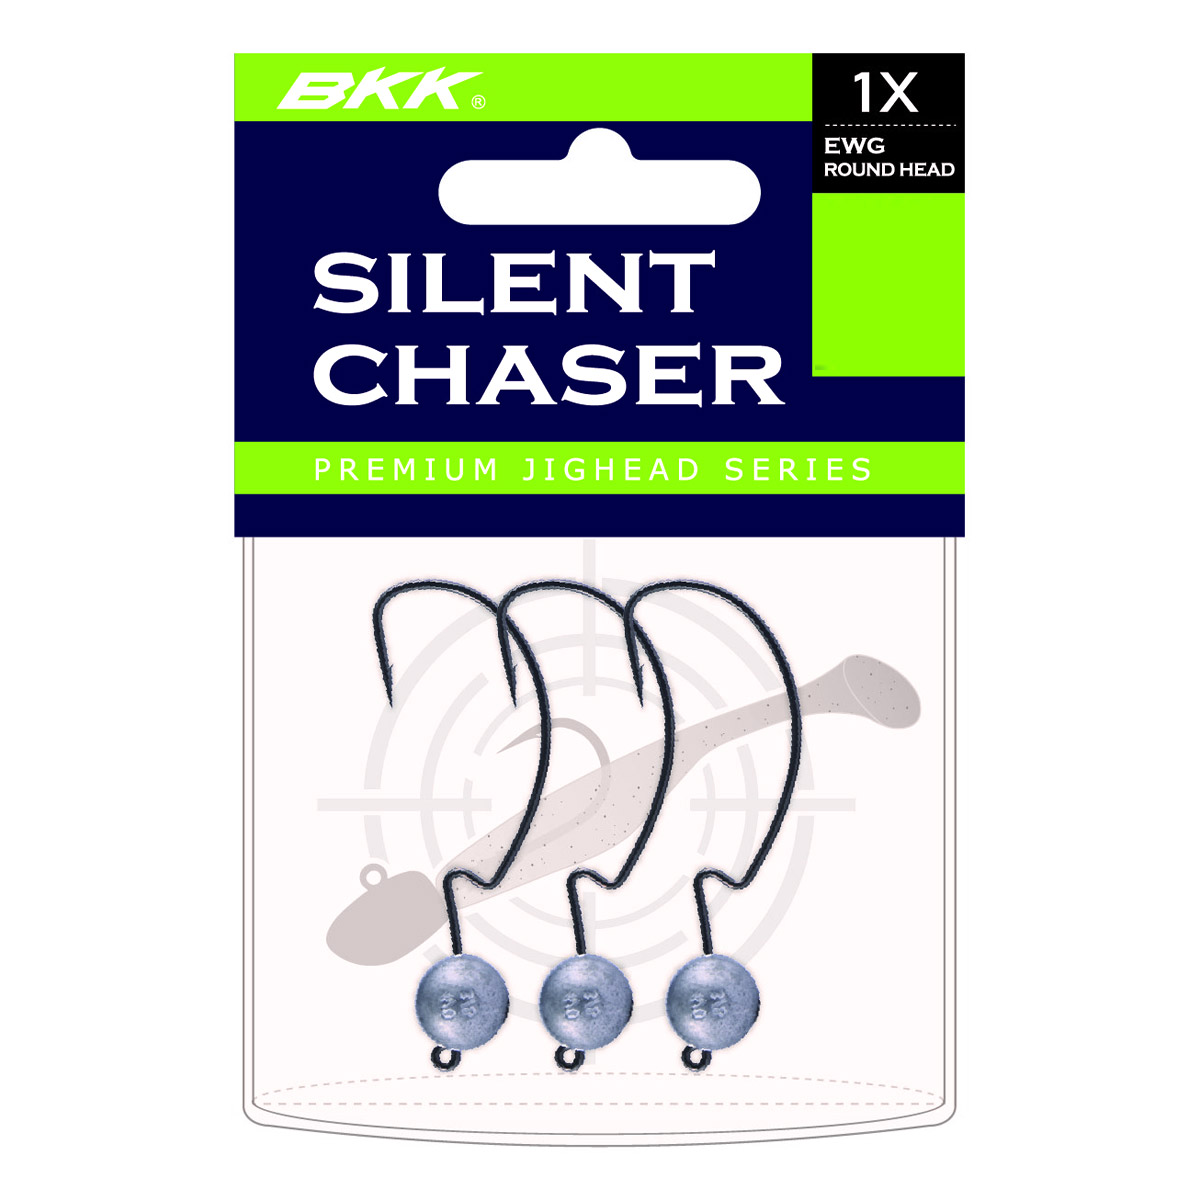 BKK Silent Chaser EWG 1X Round Head Size 4/0